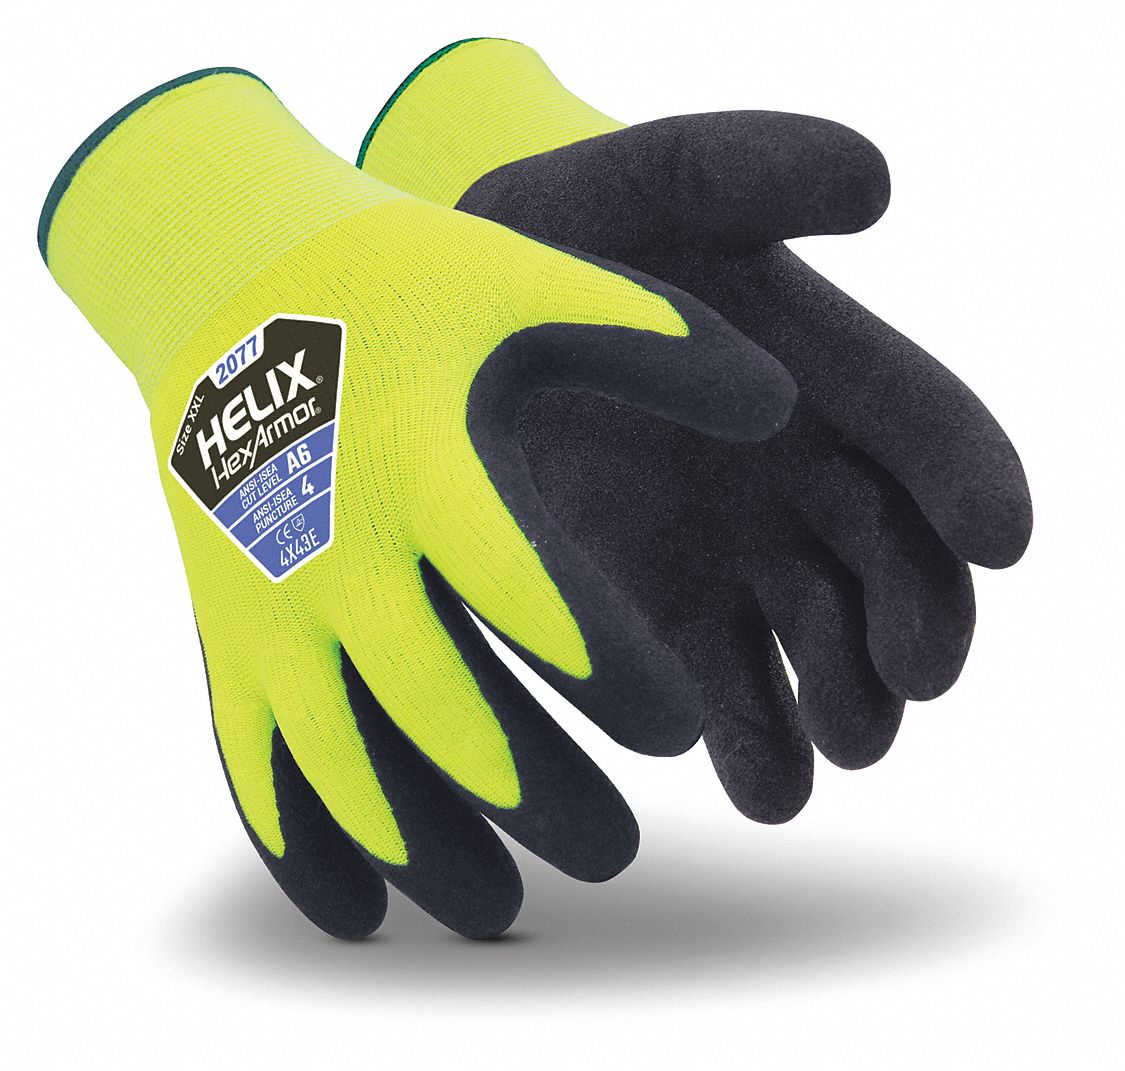 HEXARMOR Coated Gloves, L, 1 PR - 54WH78|2077-L (9) - Grainger